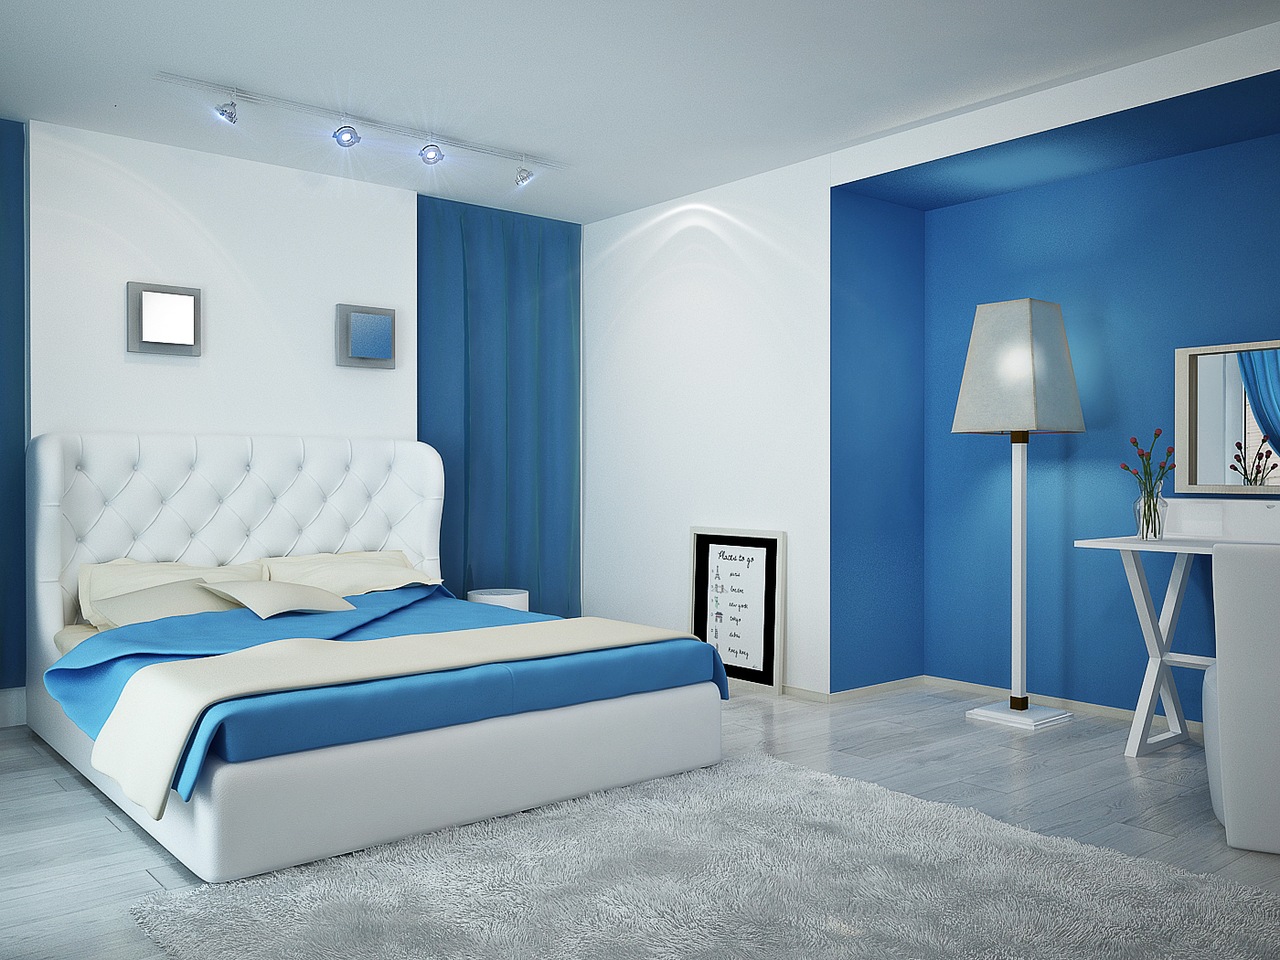 تصميم غرفة النوم الزرقاء